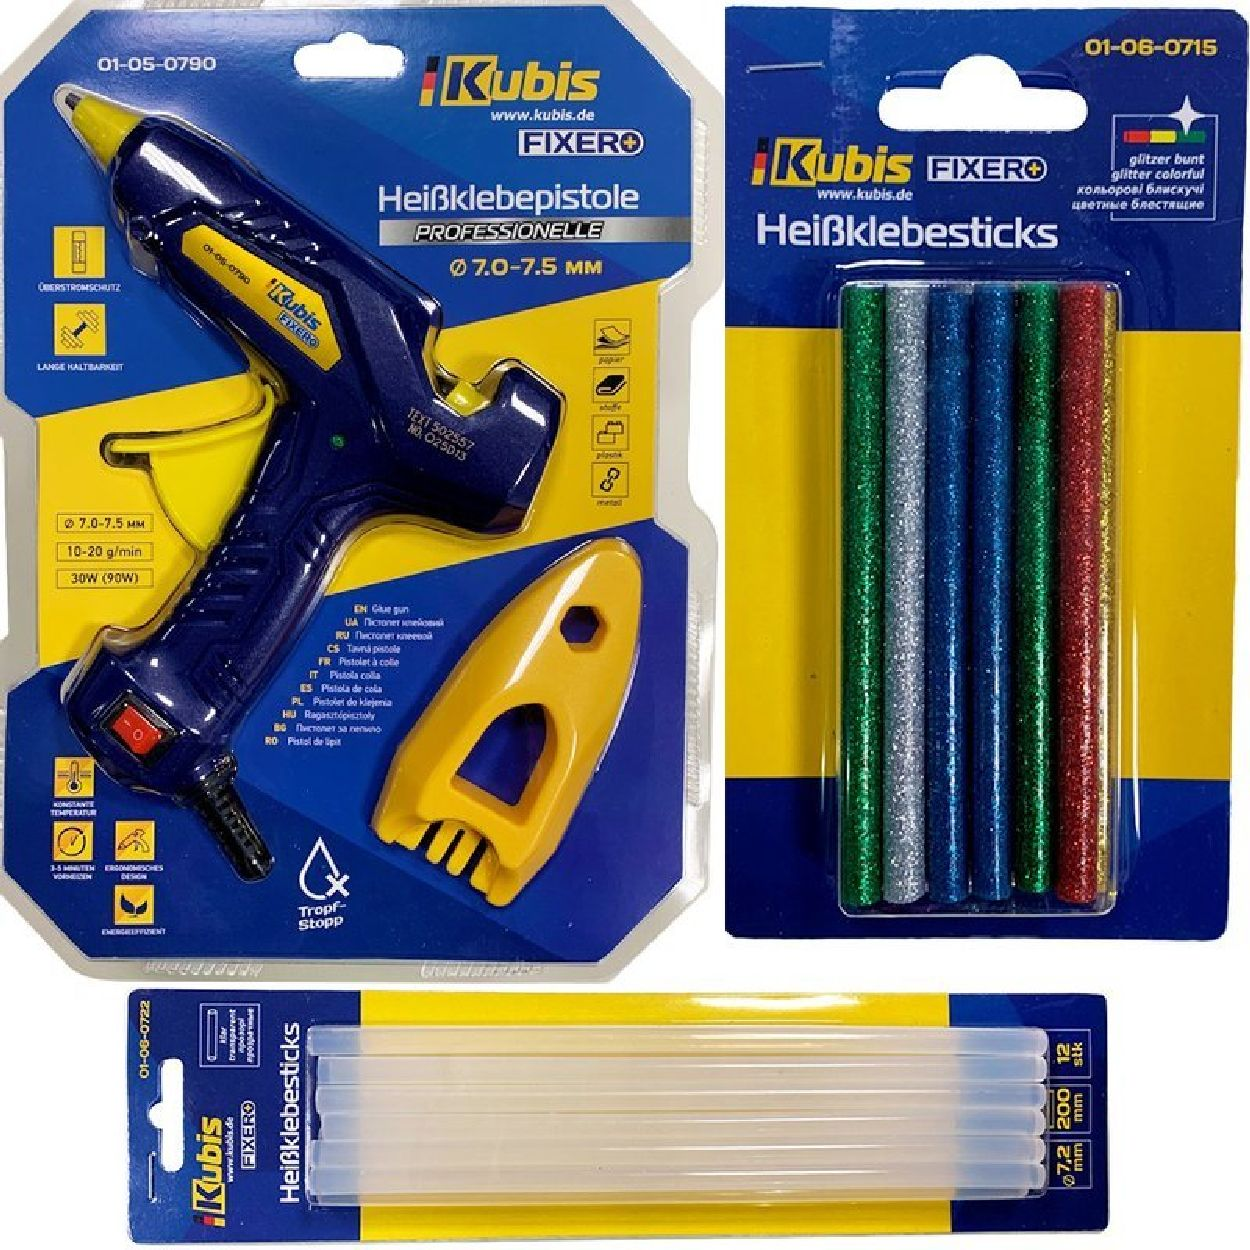 INBUSCO / KUBIS KlebepistoleSET Multifunktionswerkzeug, KB01-05-0790 -V1-Set 2x-gelb,blau,gruen,rot,braun